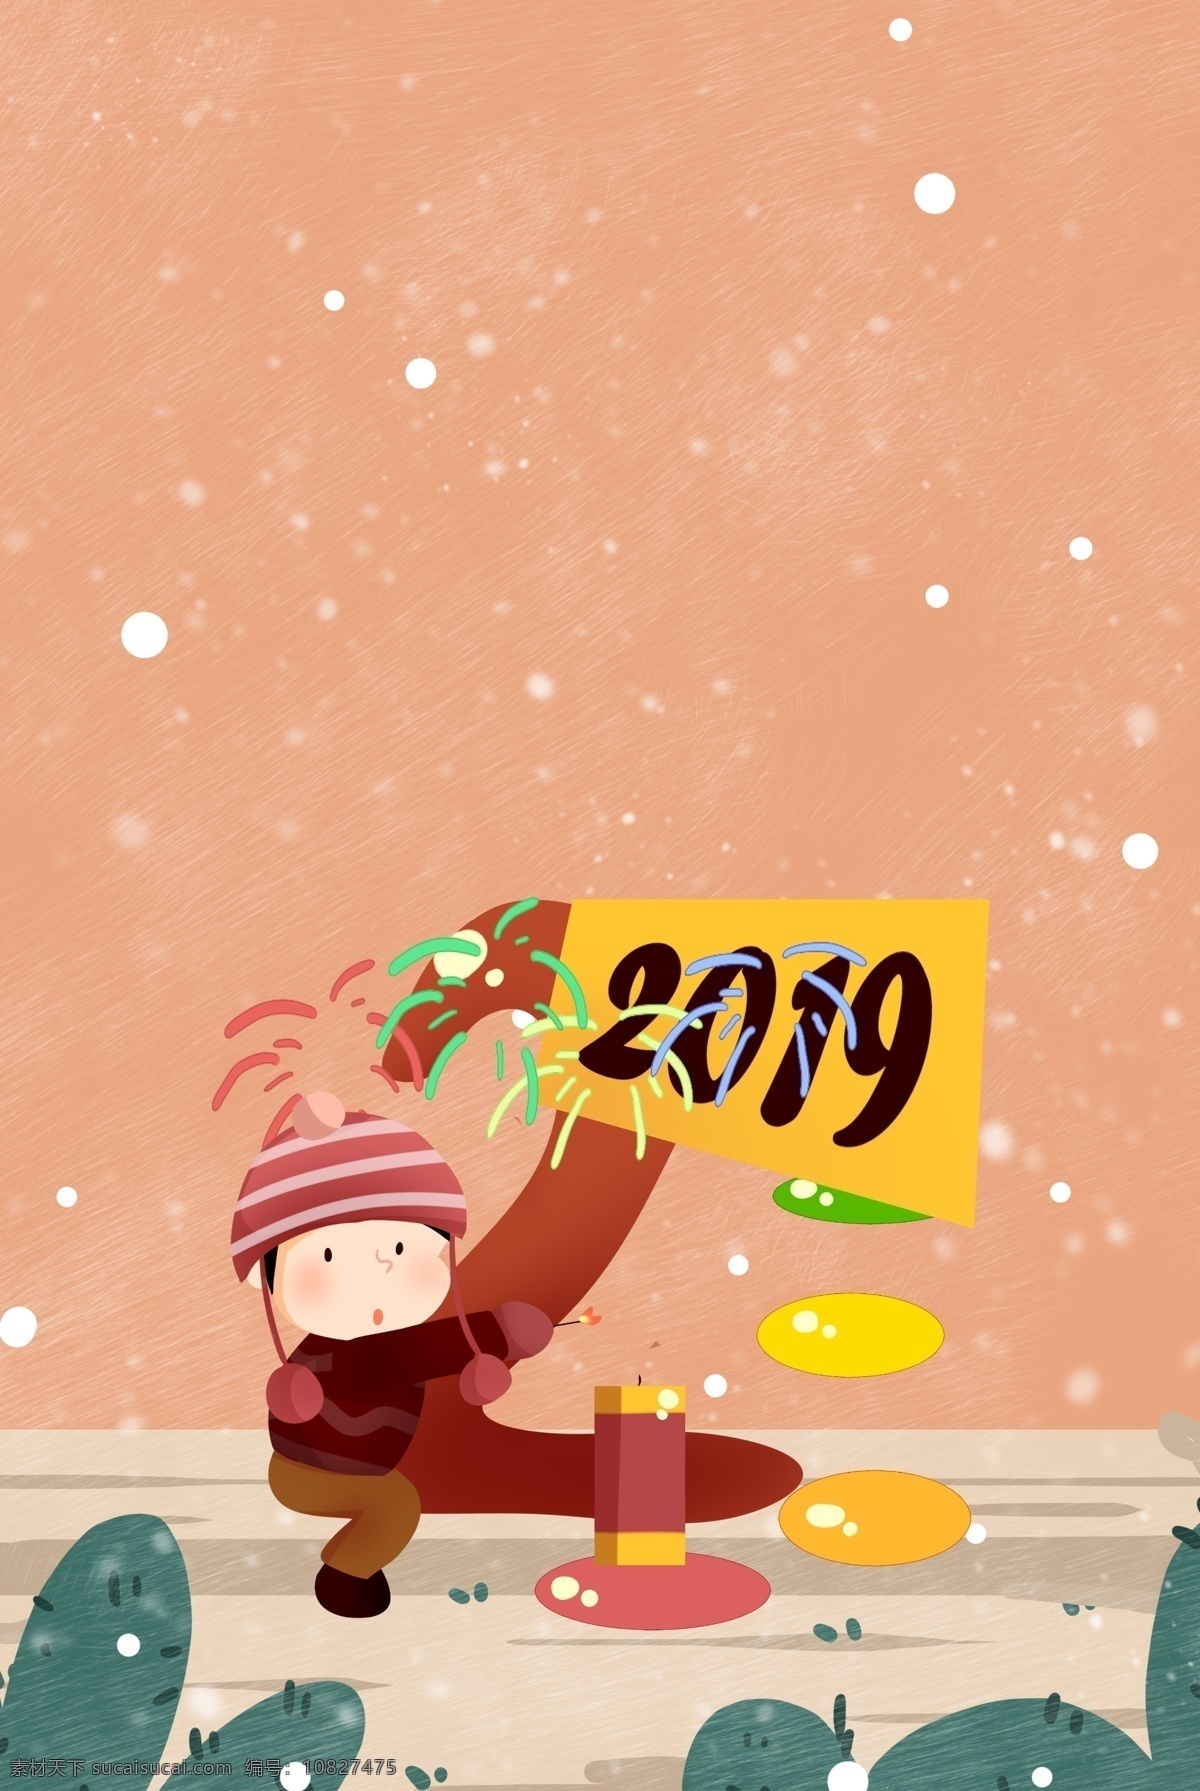 2019 年 跨 倒计时 创意 卡通 女孩 新年 猪 跨年 冬天 插画风 促销海报